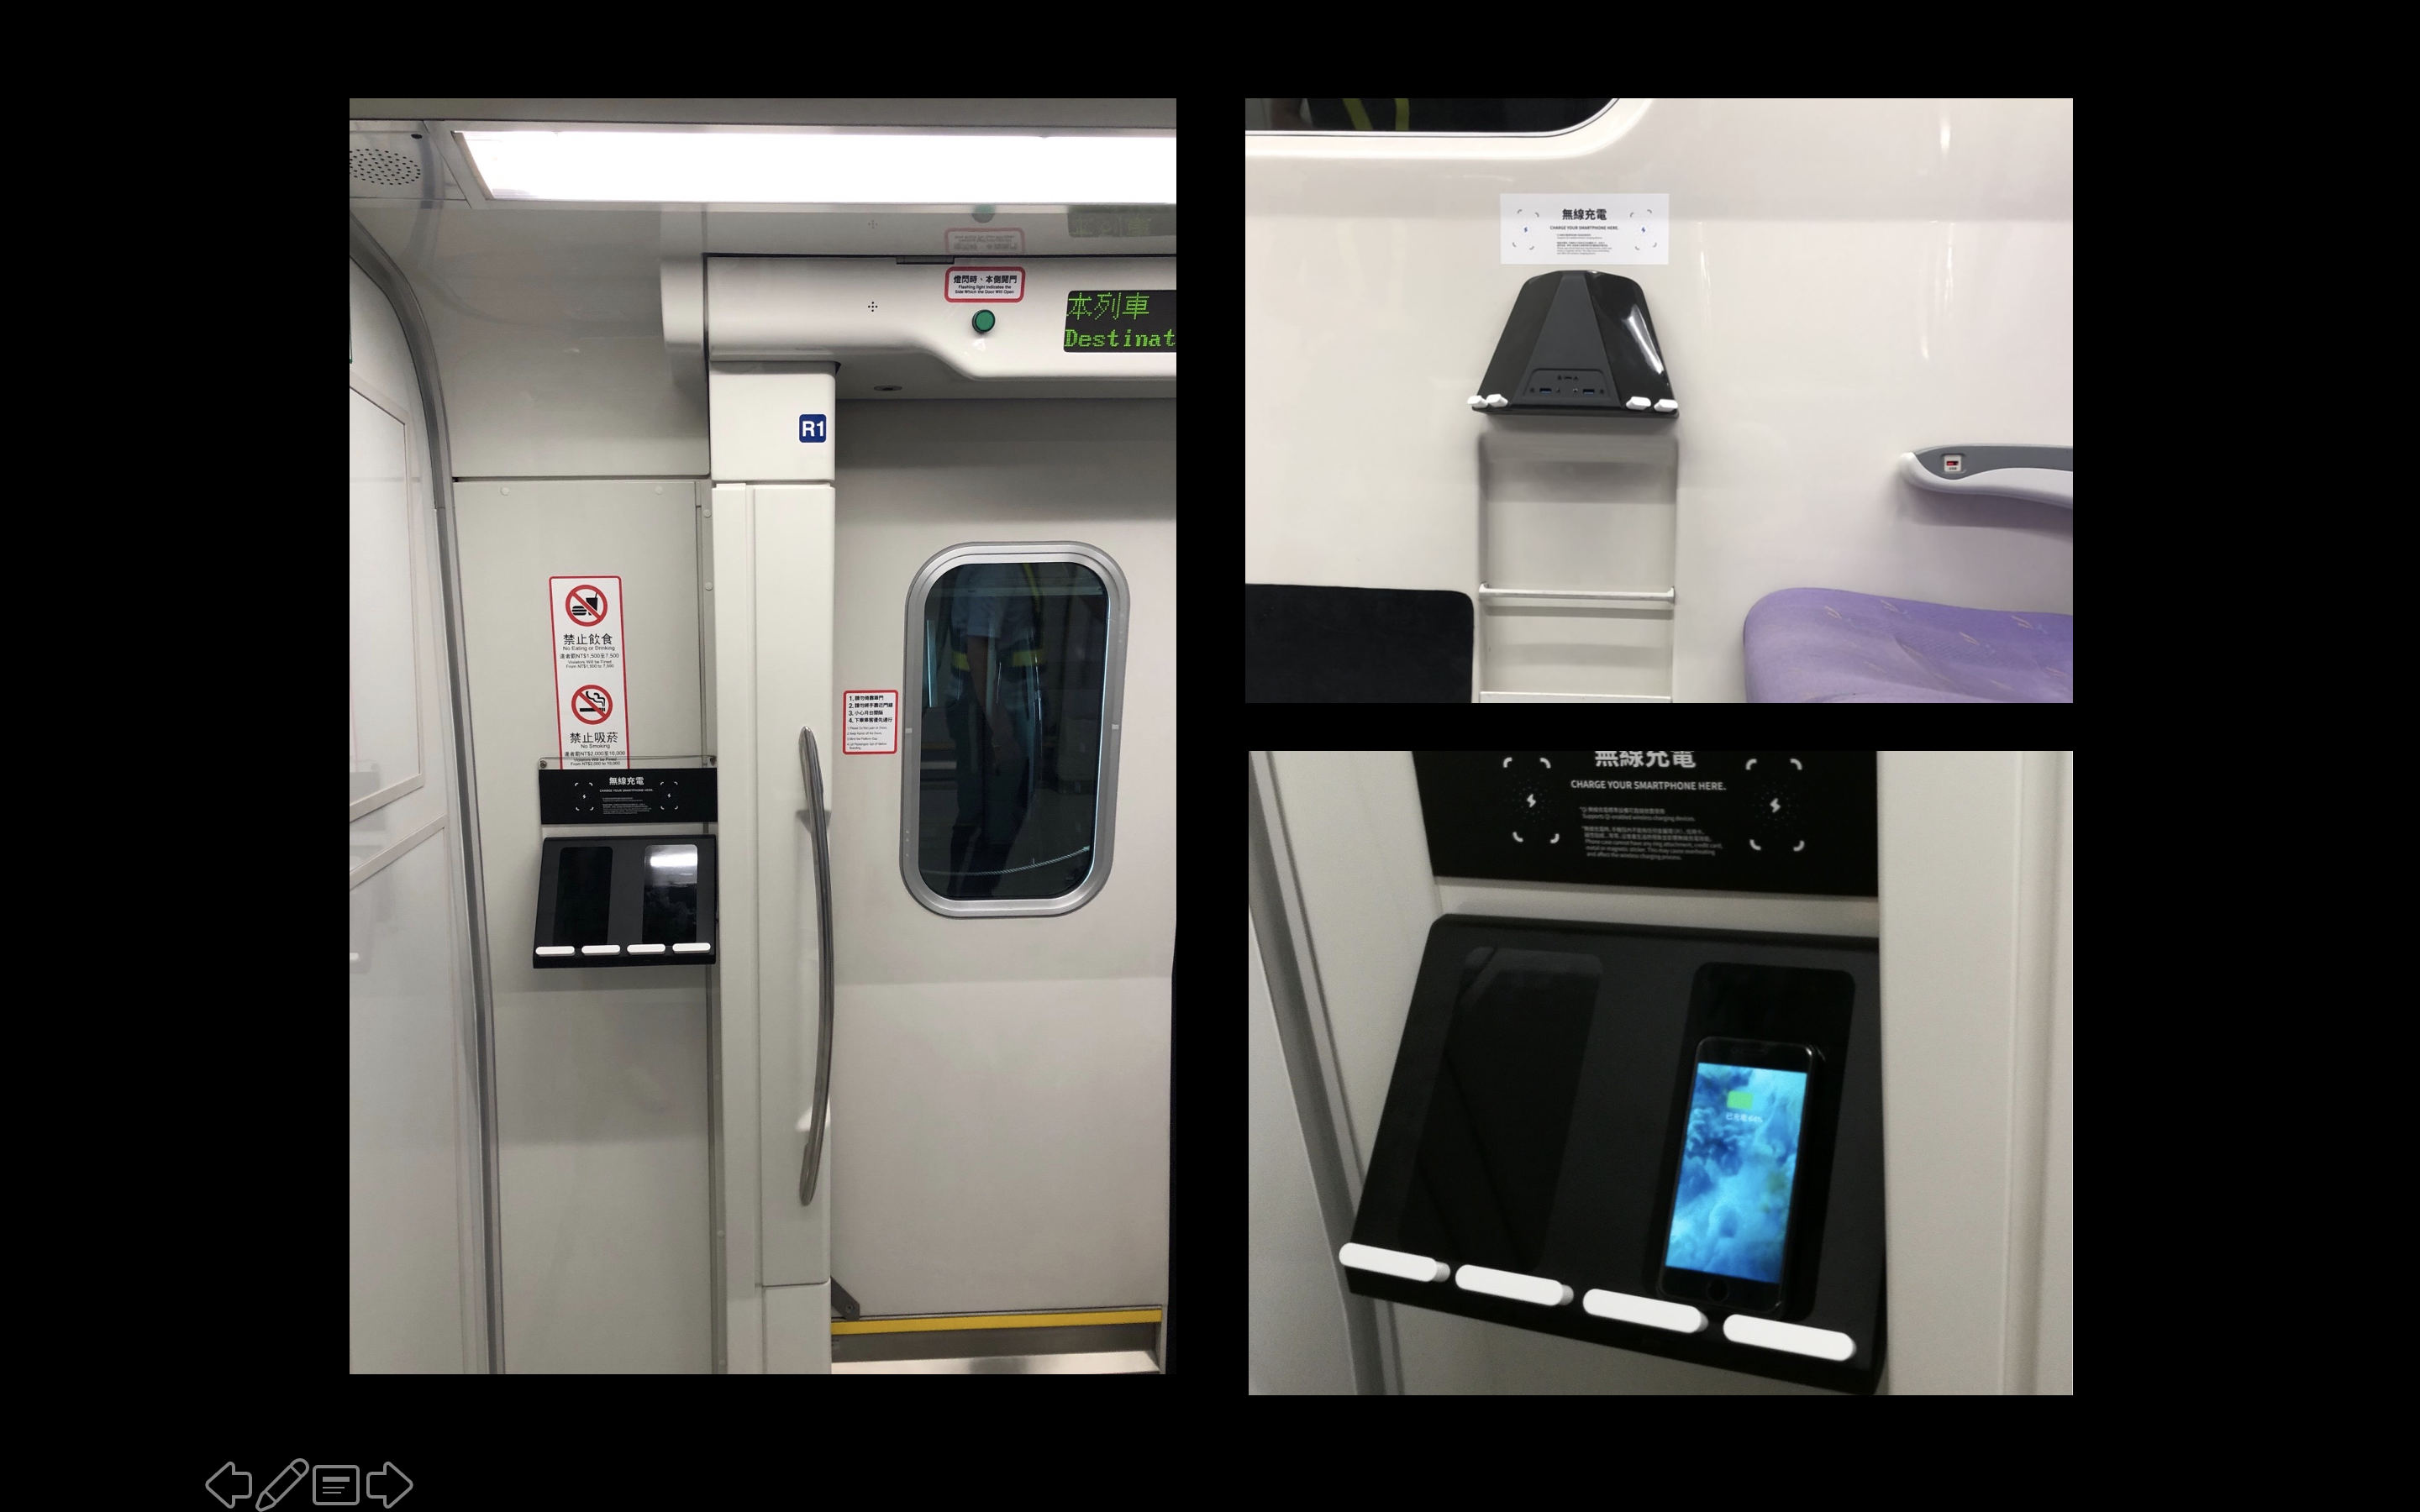 BEZALEL 新型感應無線充電器應用在桃園機場列車。(受訪者提供)